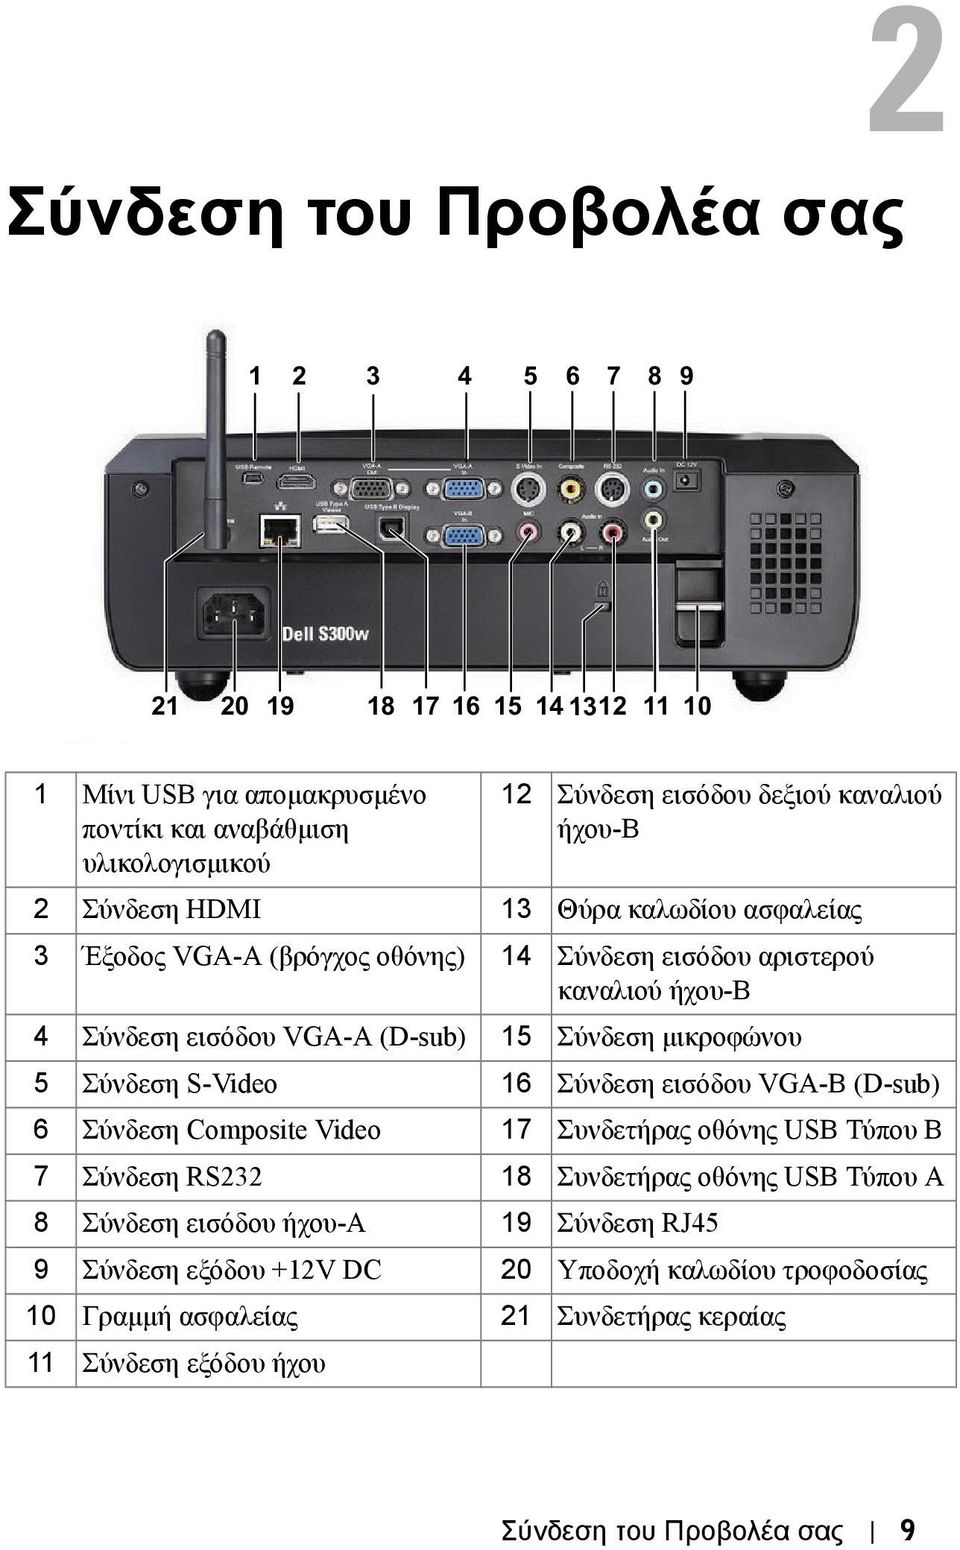 µικροφώνου 5 Σύνδεση S-Video 16 Σύνδεση εισόδου VGA-B (D-sub) 6 Σύνδεση Composite Video 17 Συνδετήρας οθόνης USB Τύπου Β 7 Σύνδεση RS232 18 Συνδετήρας οθόνης USB Τύπου Α 8